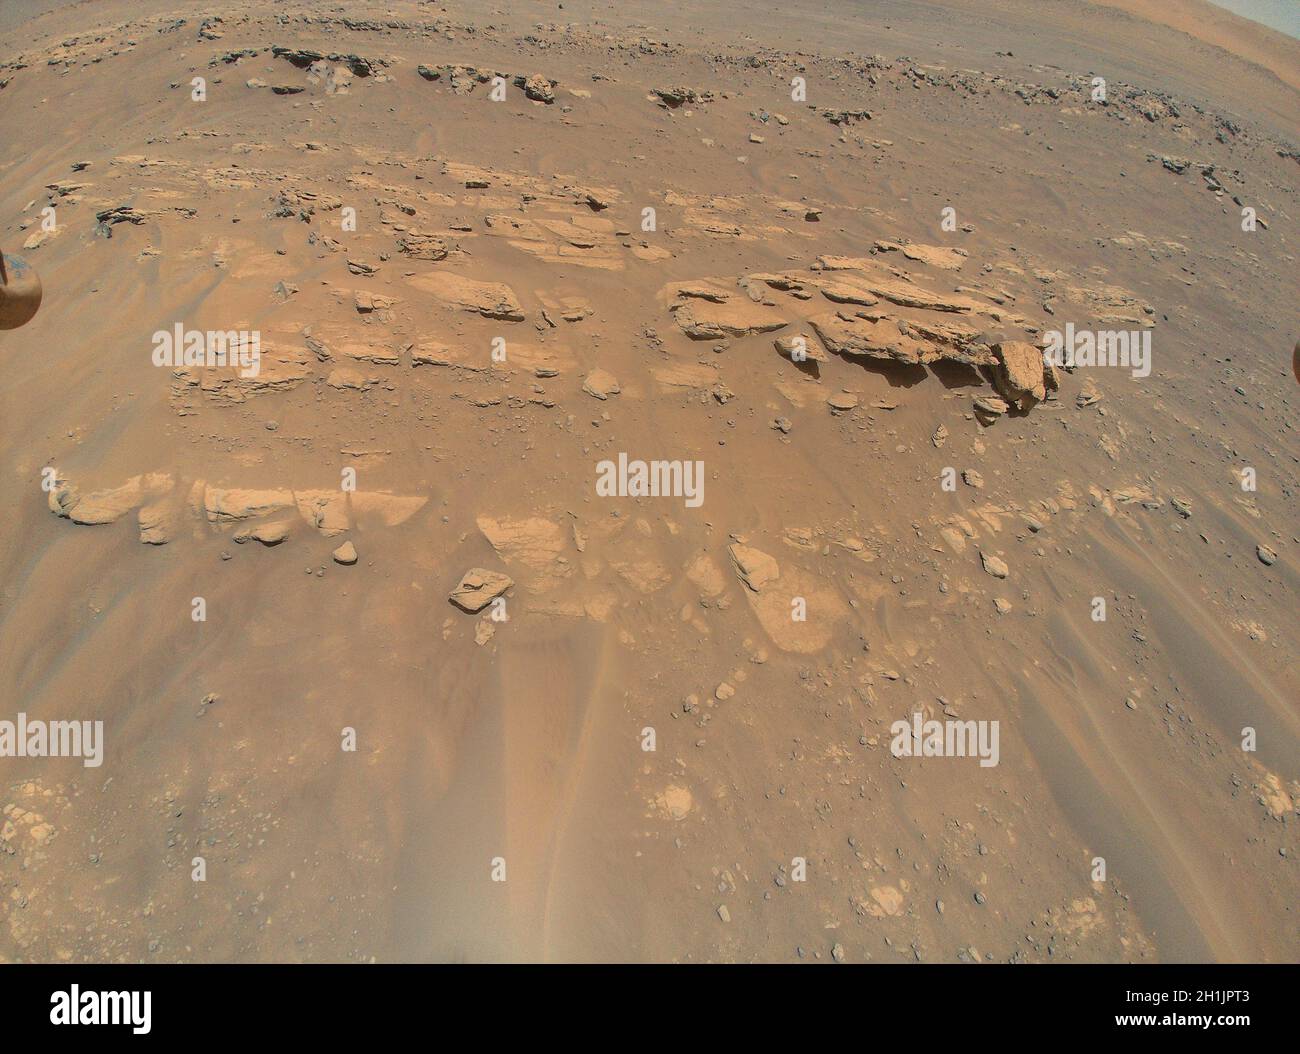 Mars Mound dal punto di vista di Ingenuity Helicopter. Questa immagine di un'area che il team mars perseverance rover chiama 'Faillefeu' è stata catturata dall'Ingenuity Mars Helicopter della NASA il 4 settembre 2021 ad un'altitudine di 8 metri (26 piedi). Una versione ottimizzata e migliorata di un'immagine NASA / credito NASA. Foto Stock